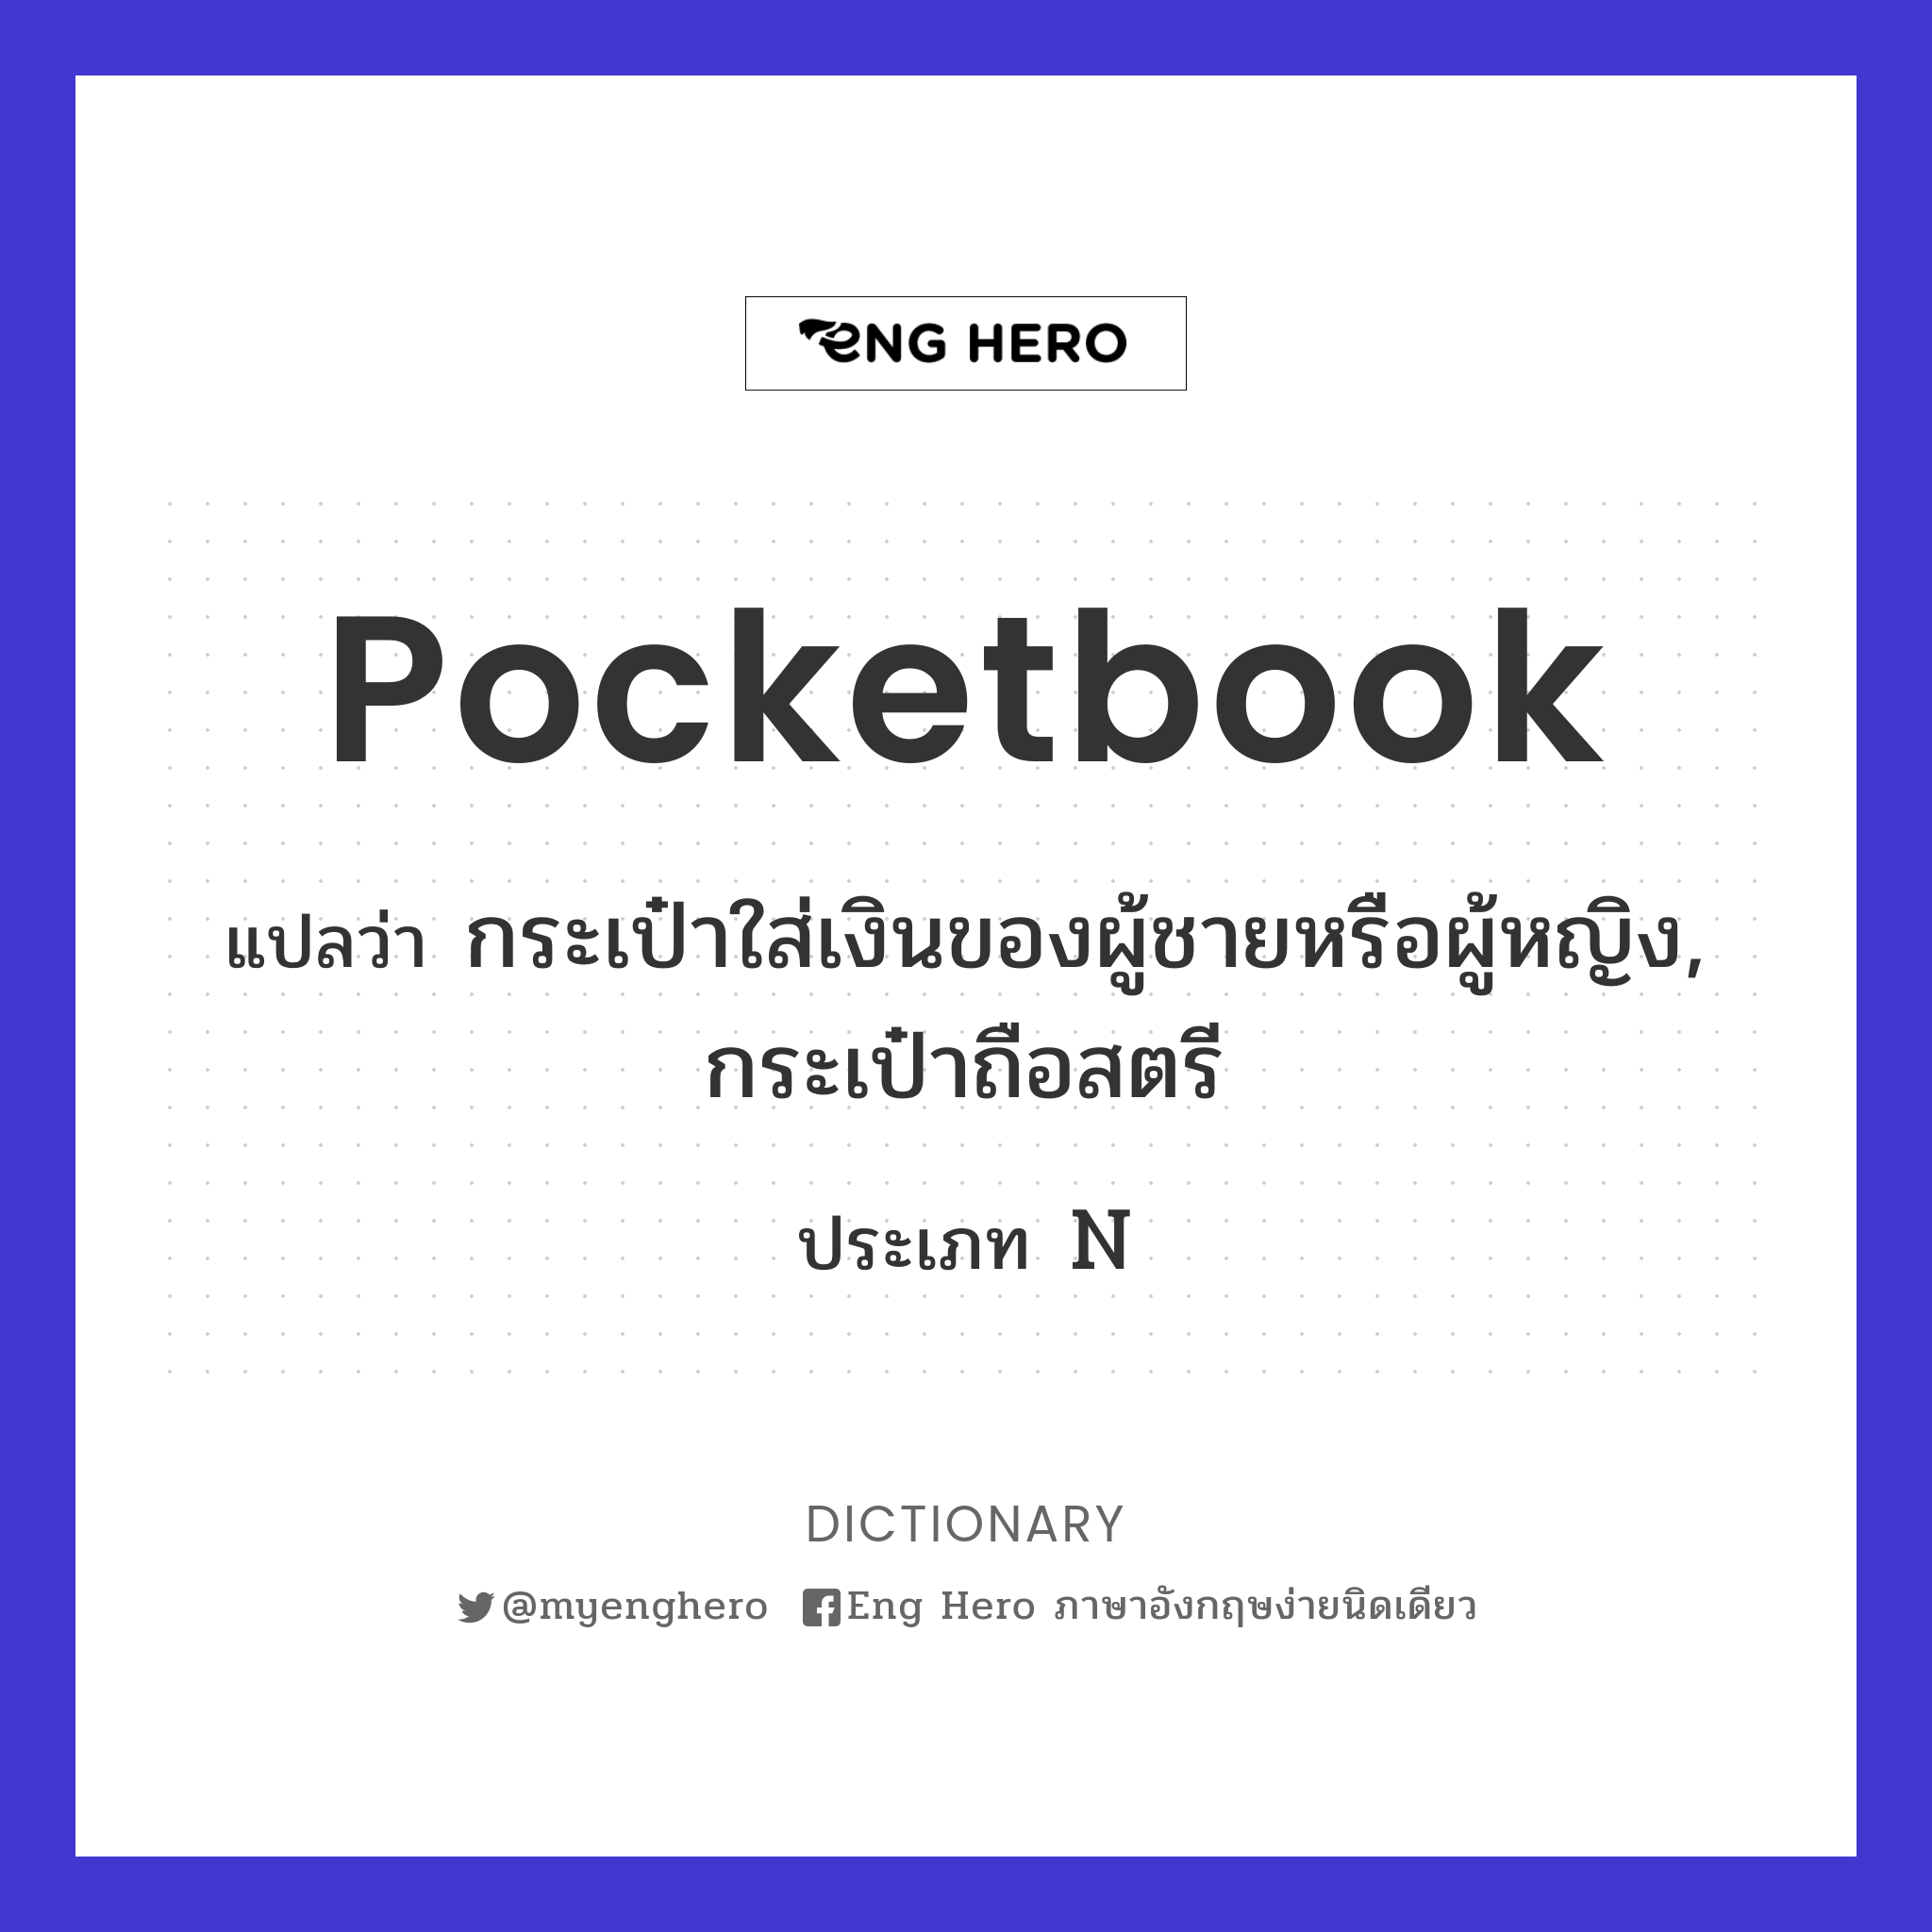 pocketbook